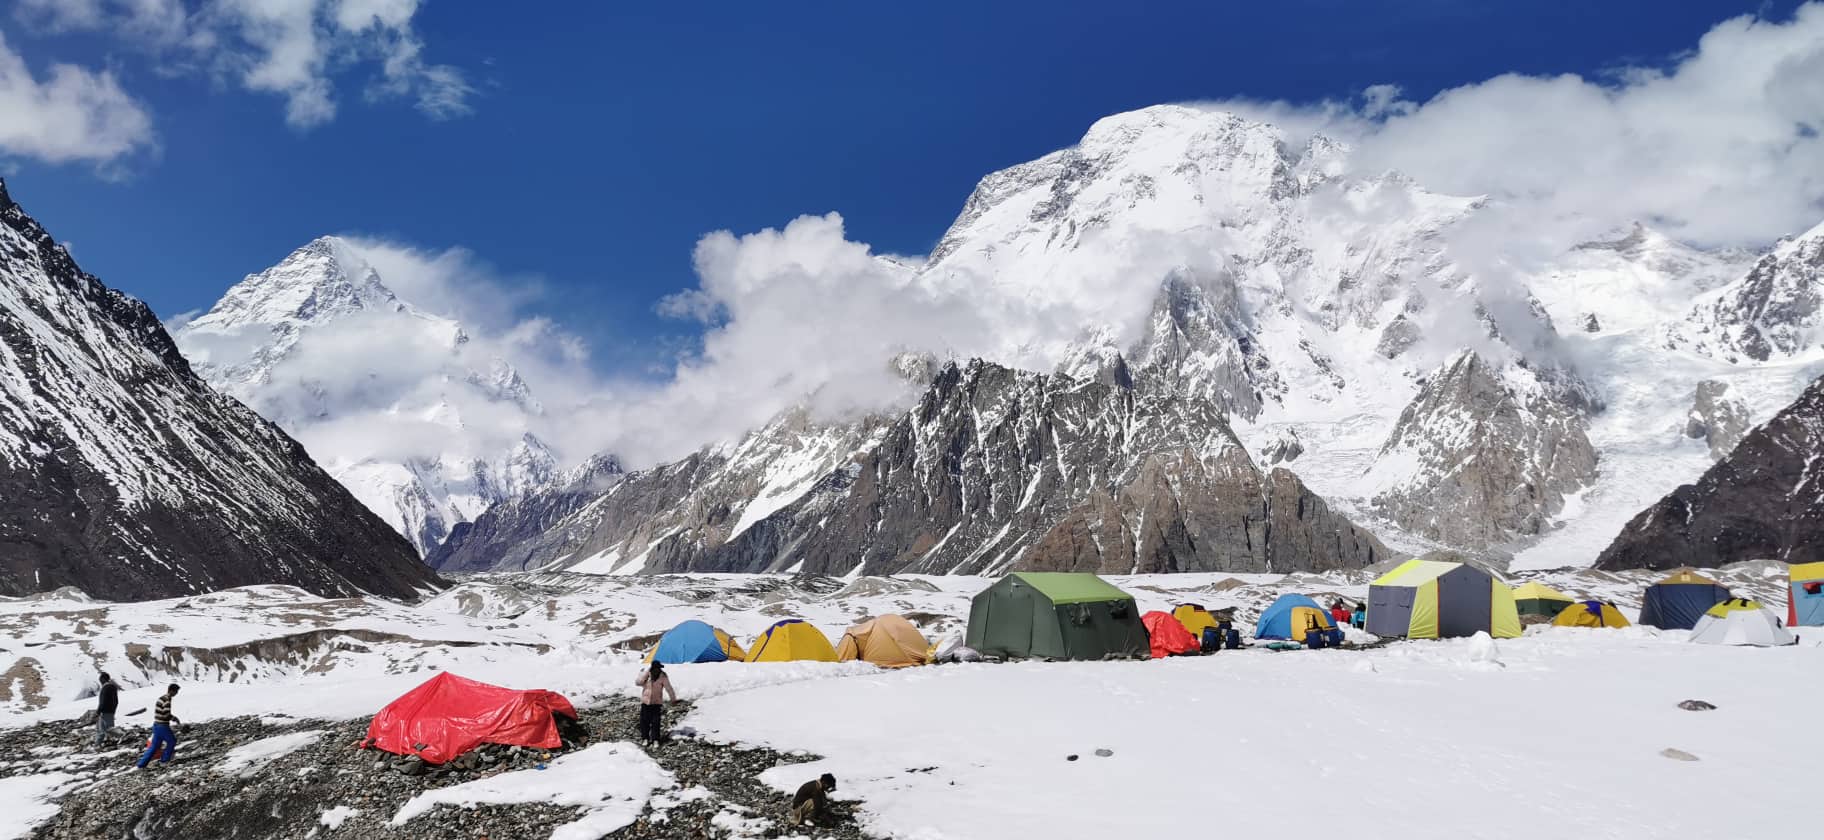 K2 alaptábor, balra a K2, jobbra a Broad Peak emelkedik Forrás: Magyar K2 expedíció 2019